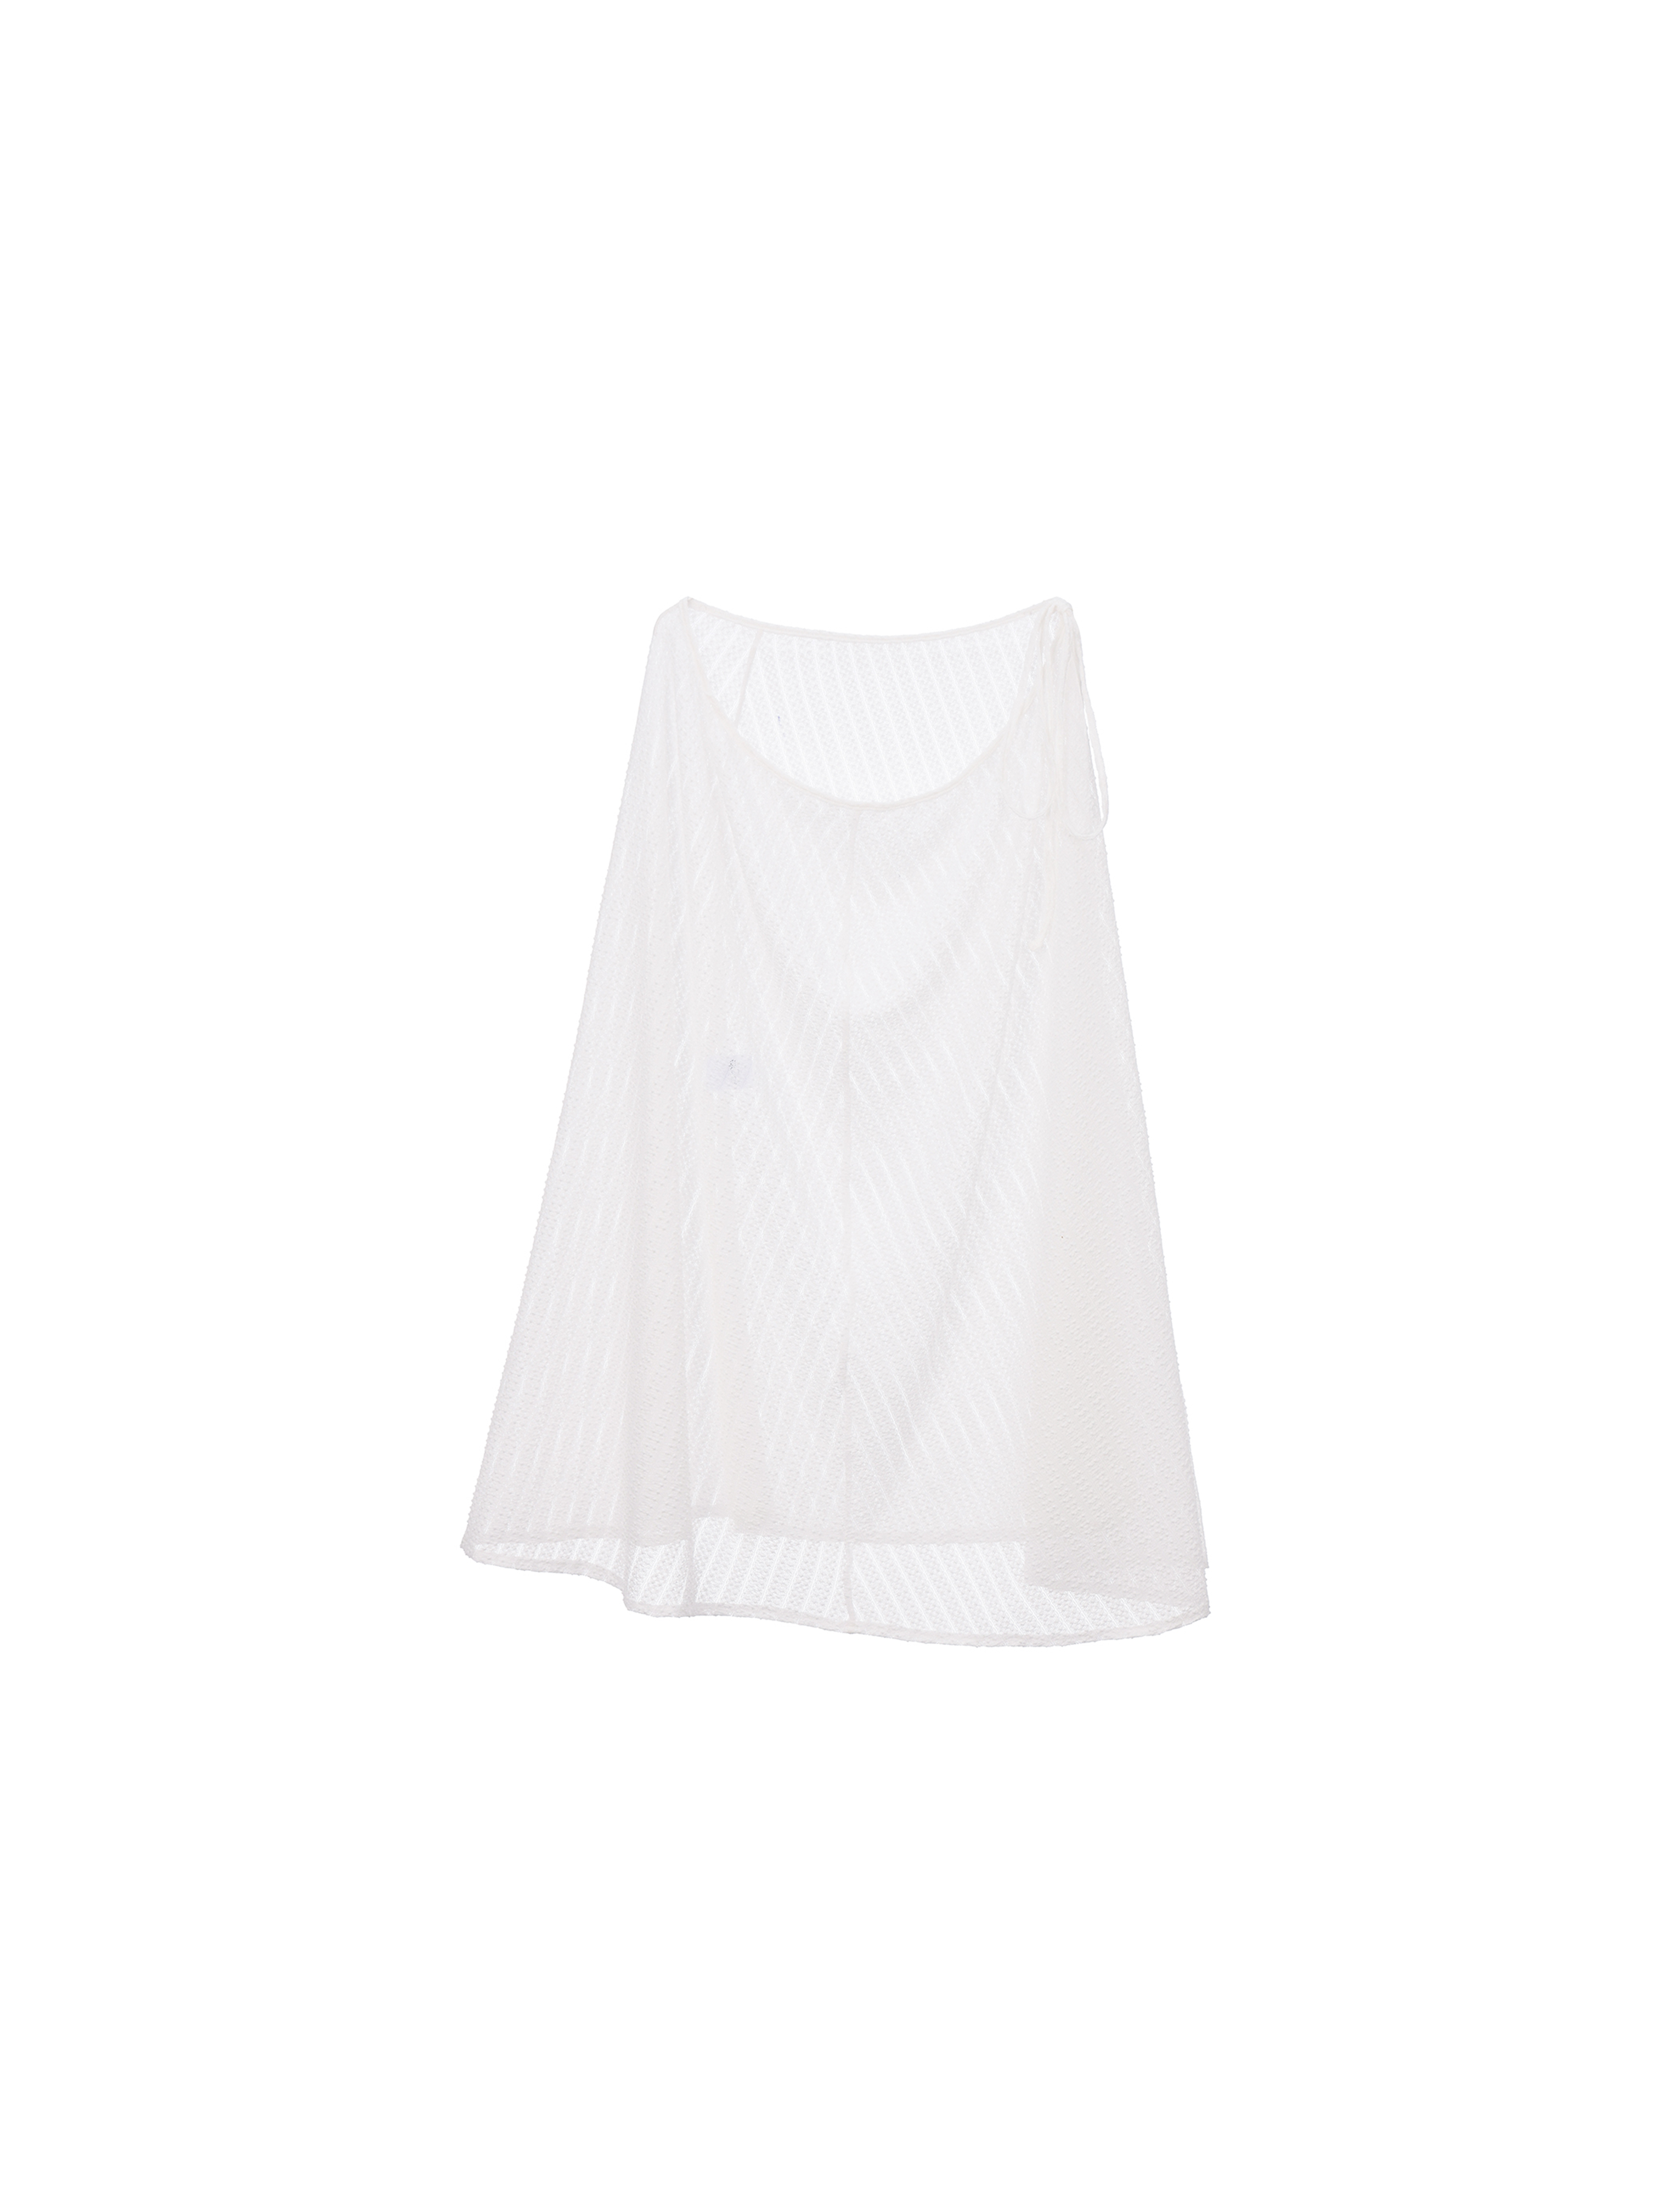 see-through chiffon wrap skirt - white